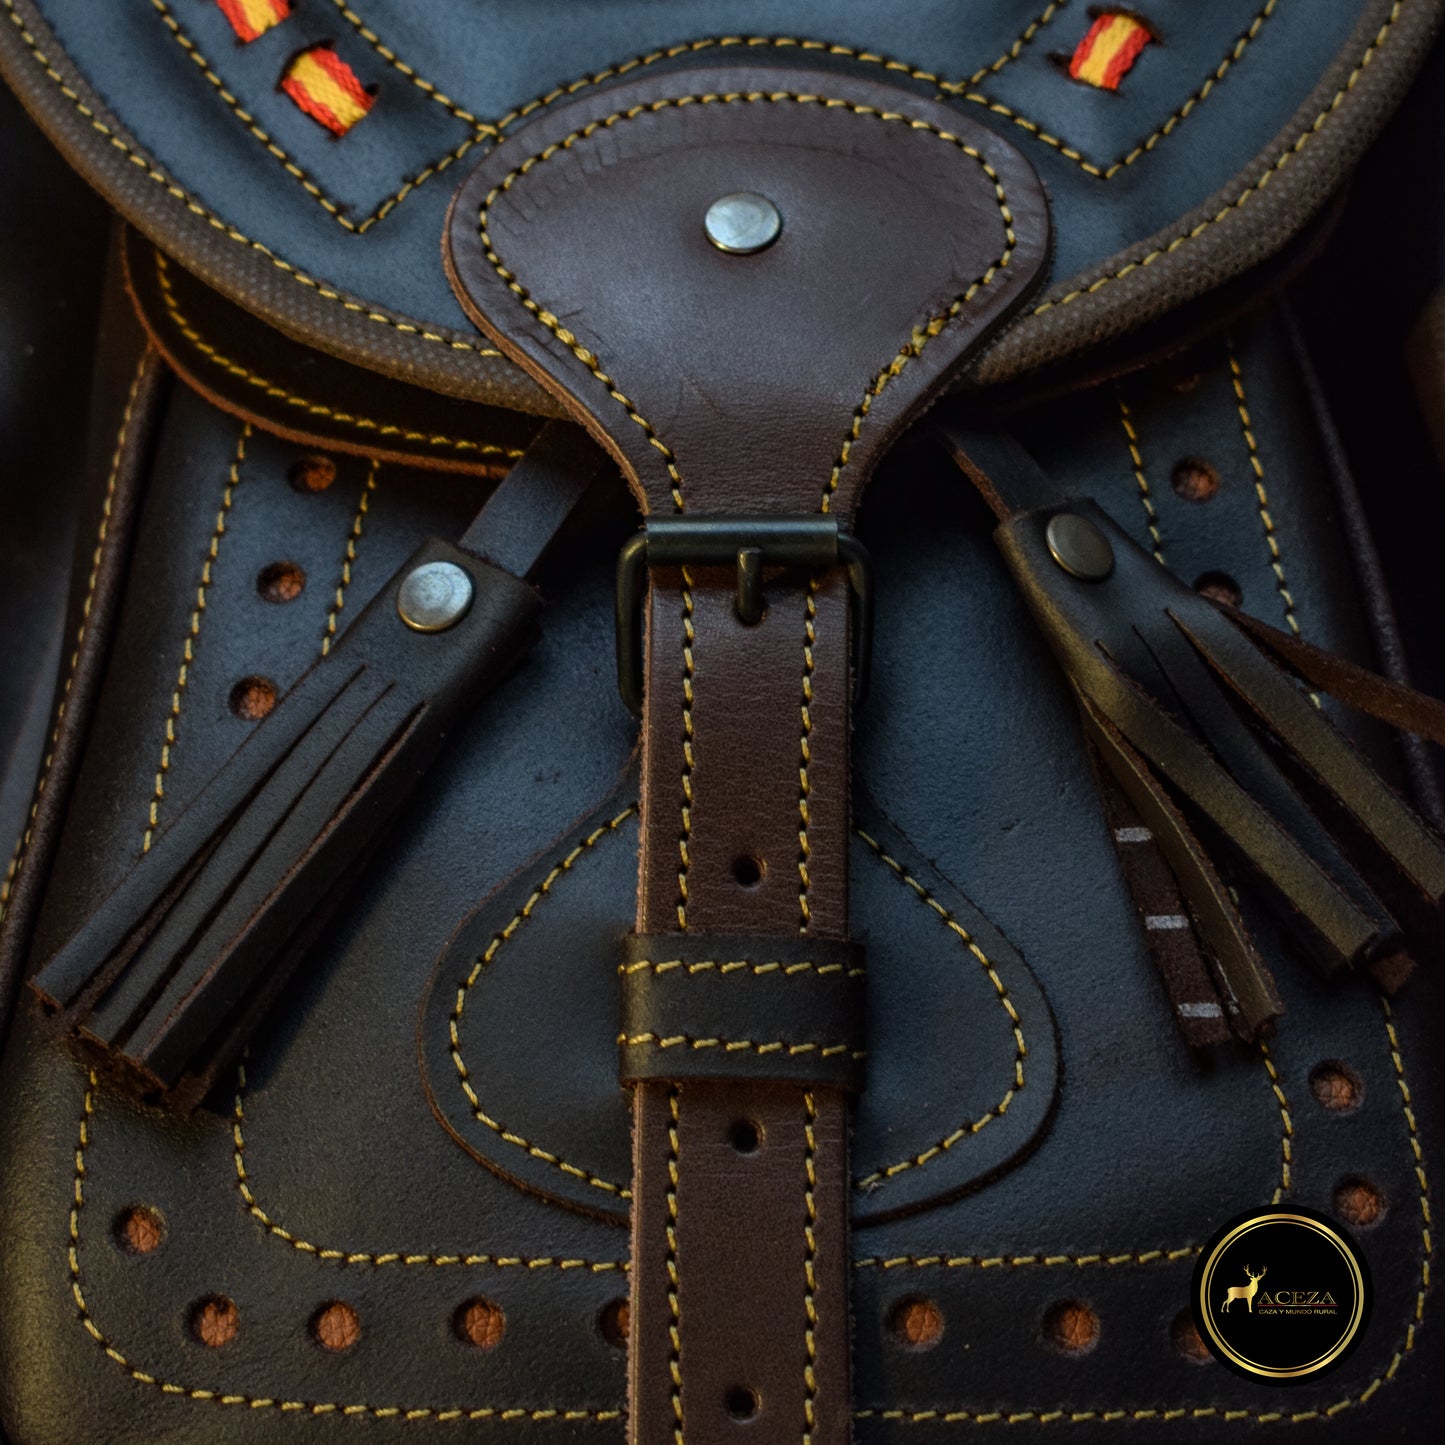 Detalles del cierre y del bolsillo delantero del morral de caza, combinando estilo y funcionalidad para los cazadores más exigentes. Encuéntralo en ACEZA.